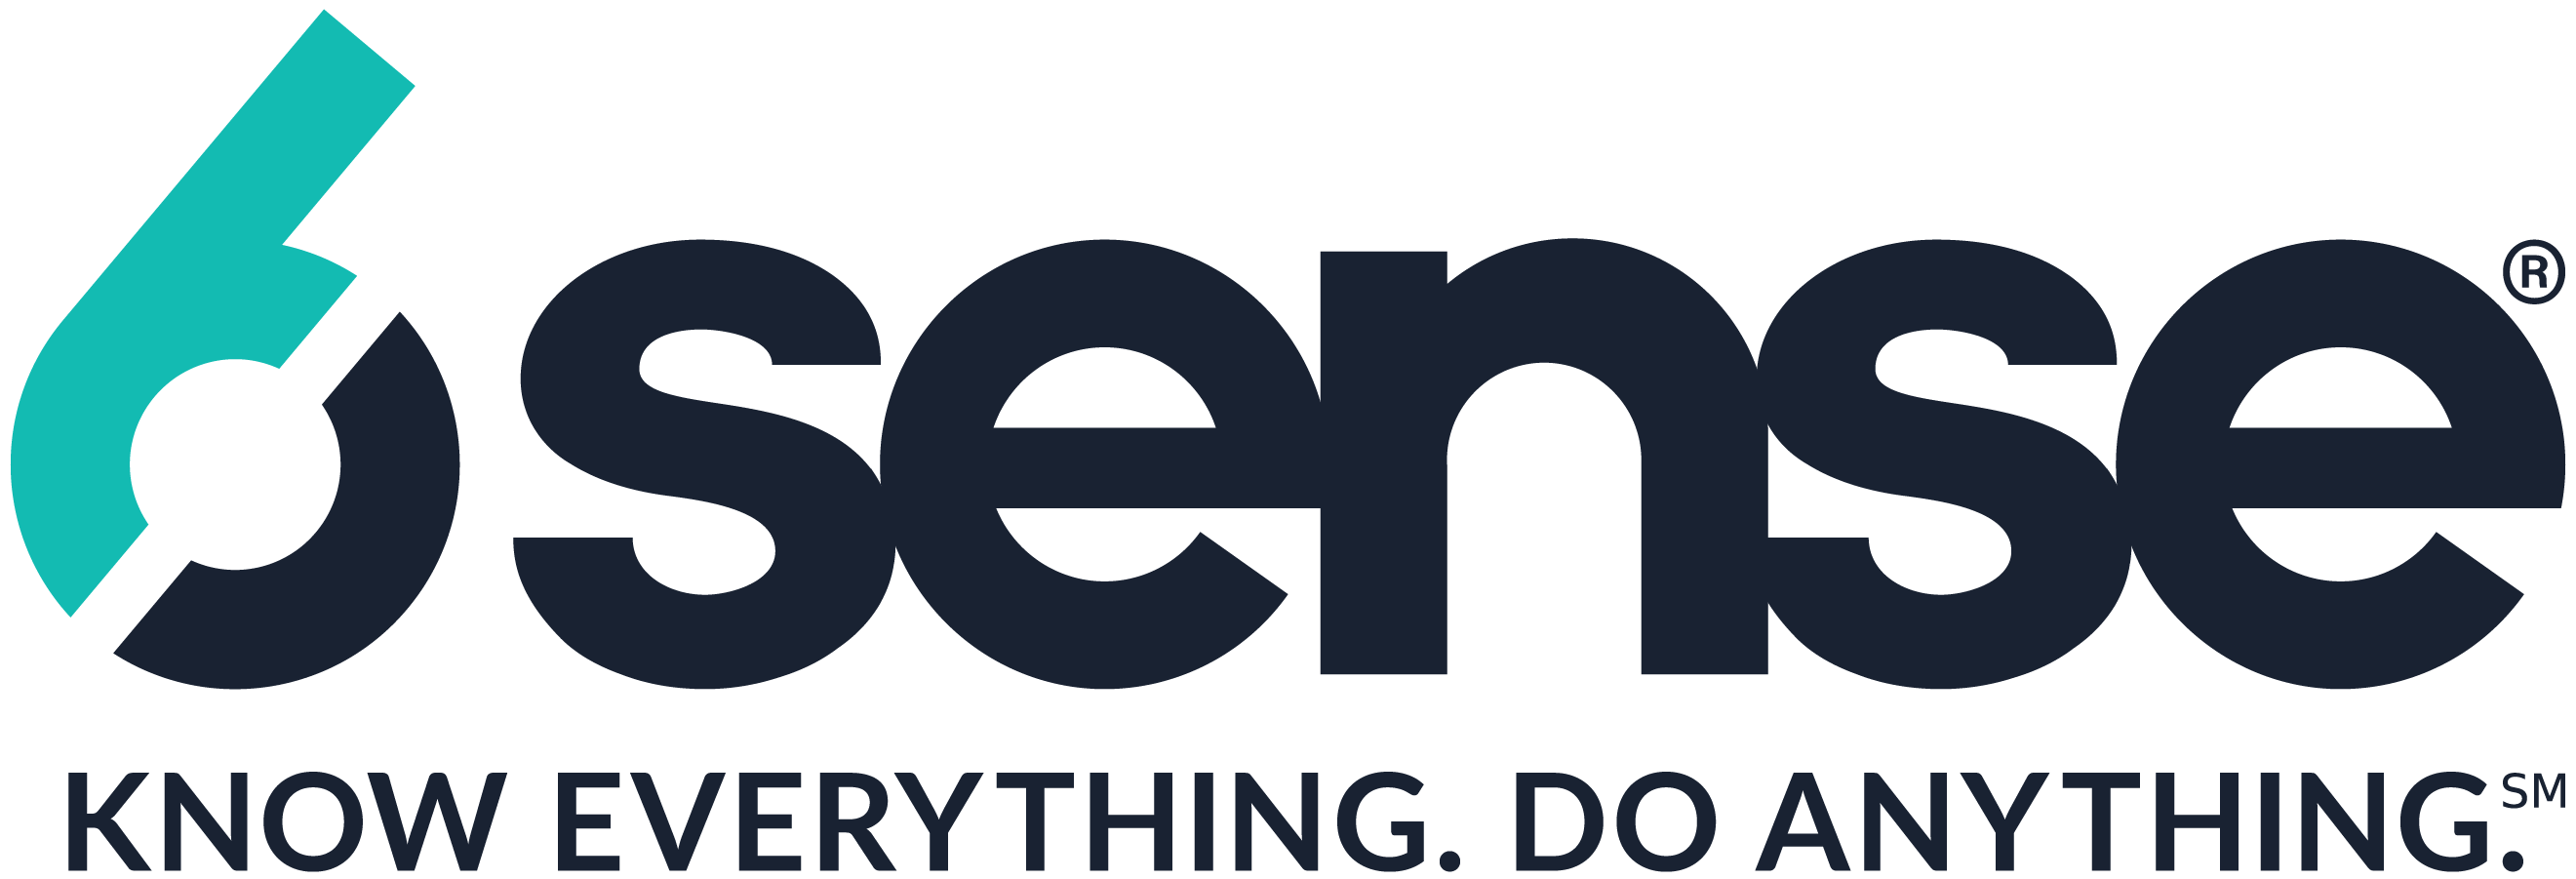 6Sense_logo.png